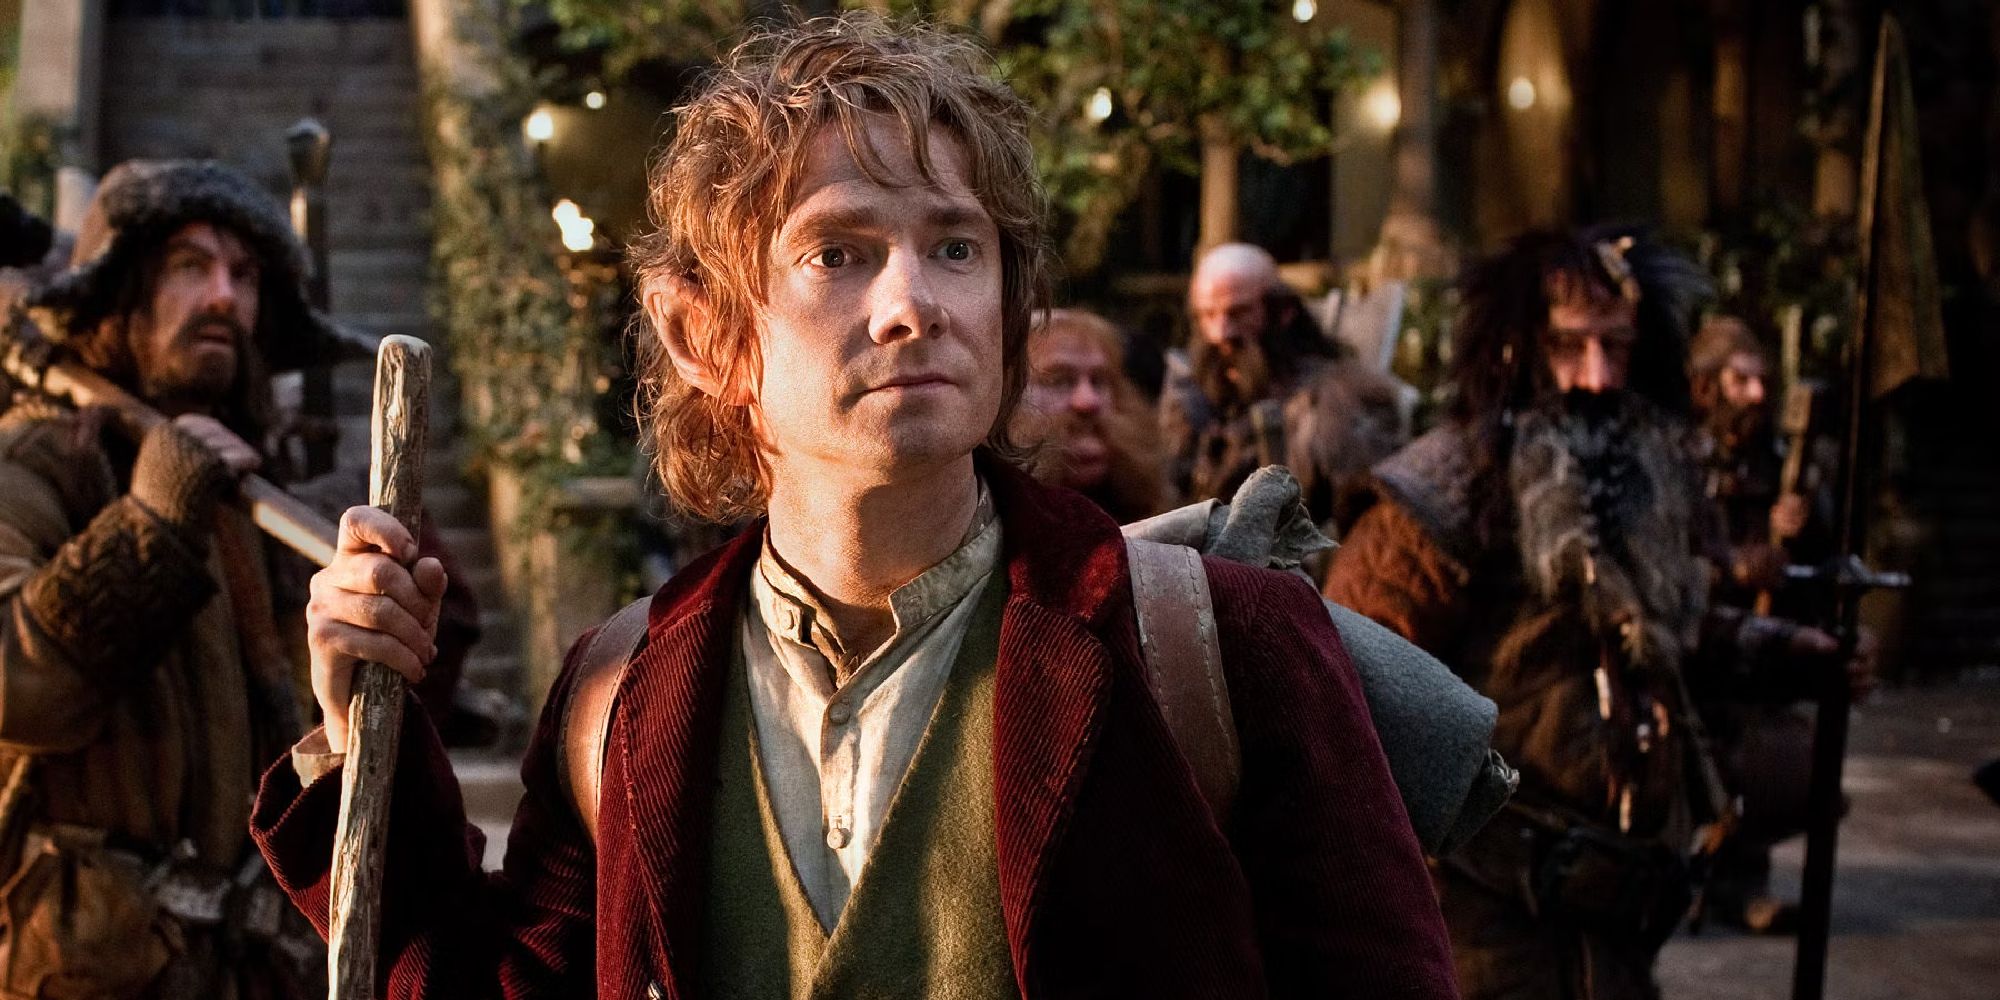 Martin Freeman as Bilbo Baggins in The Hobbit, 2012